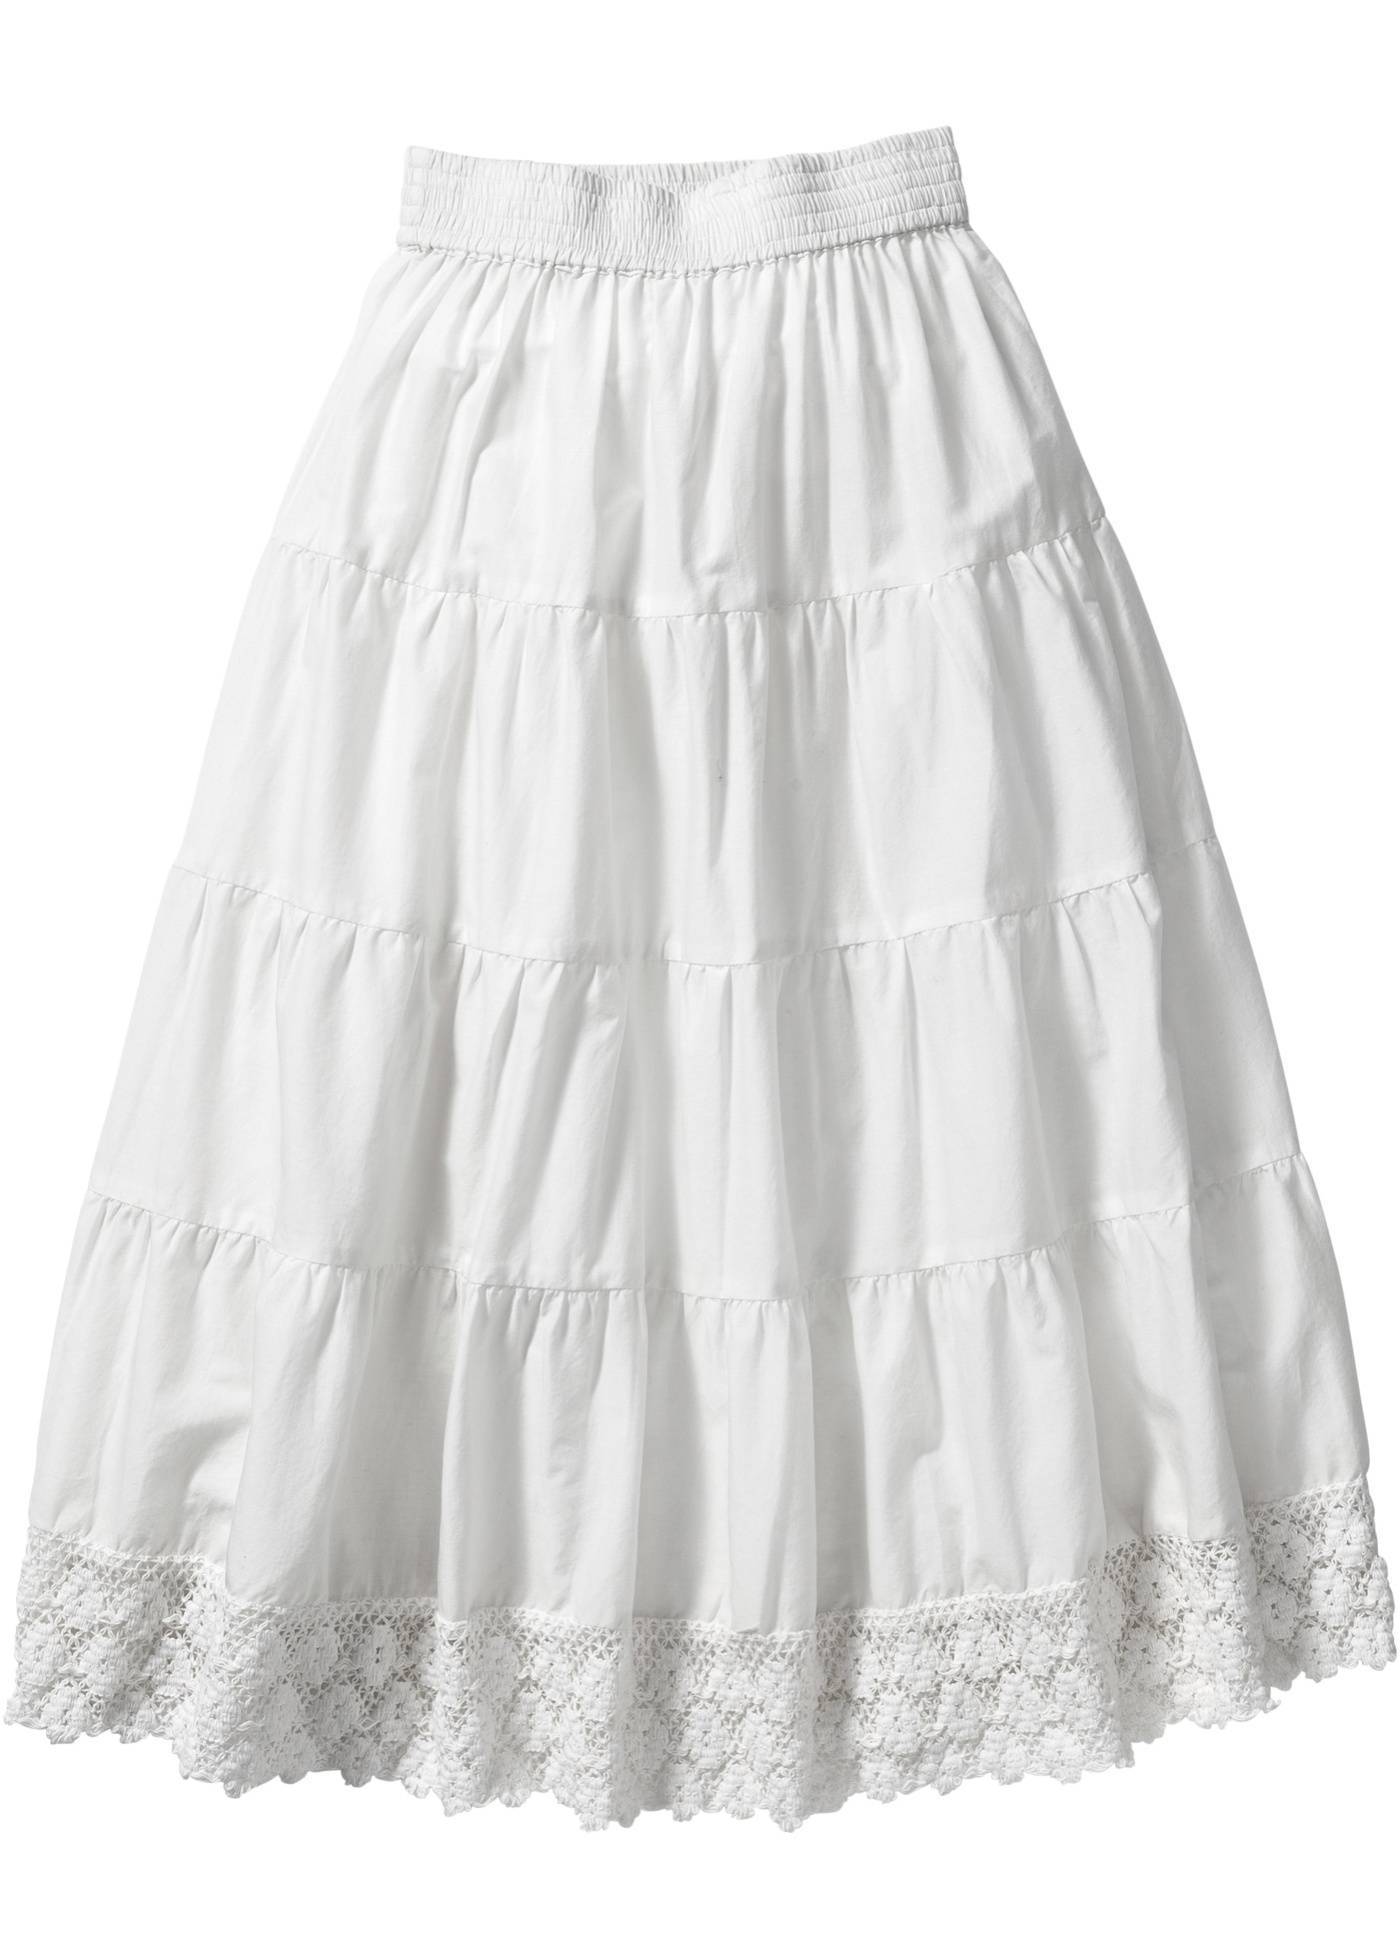 Купить юбку хлопок. Белая юбка. Хлопчатобумажная юбка. Белая юбка для девочки. Белая летняя юбка.